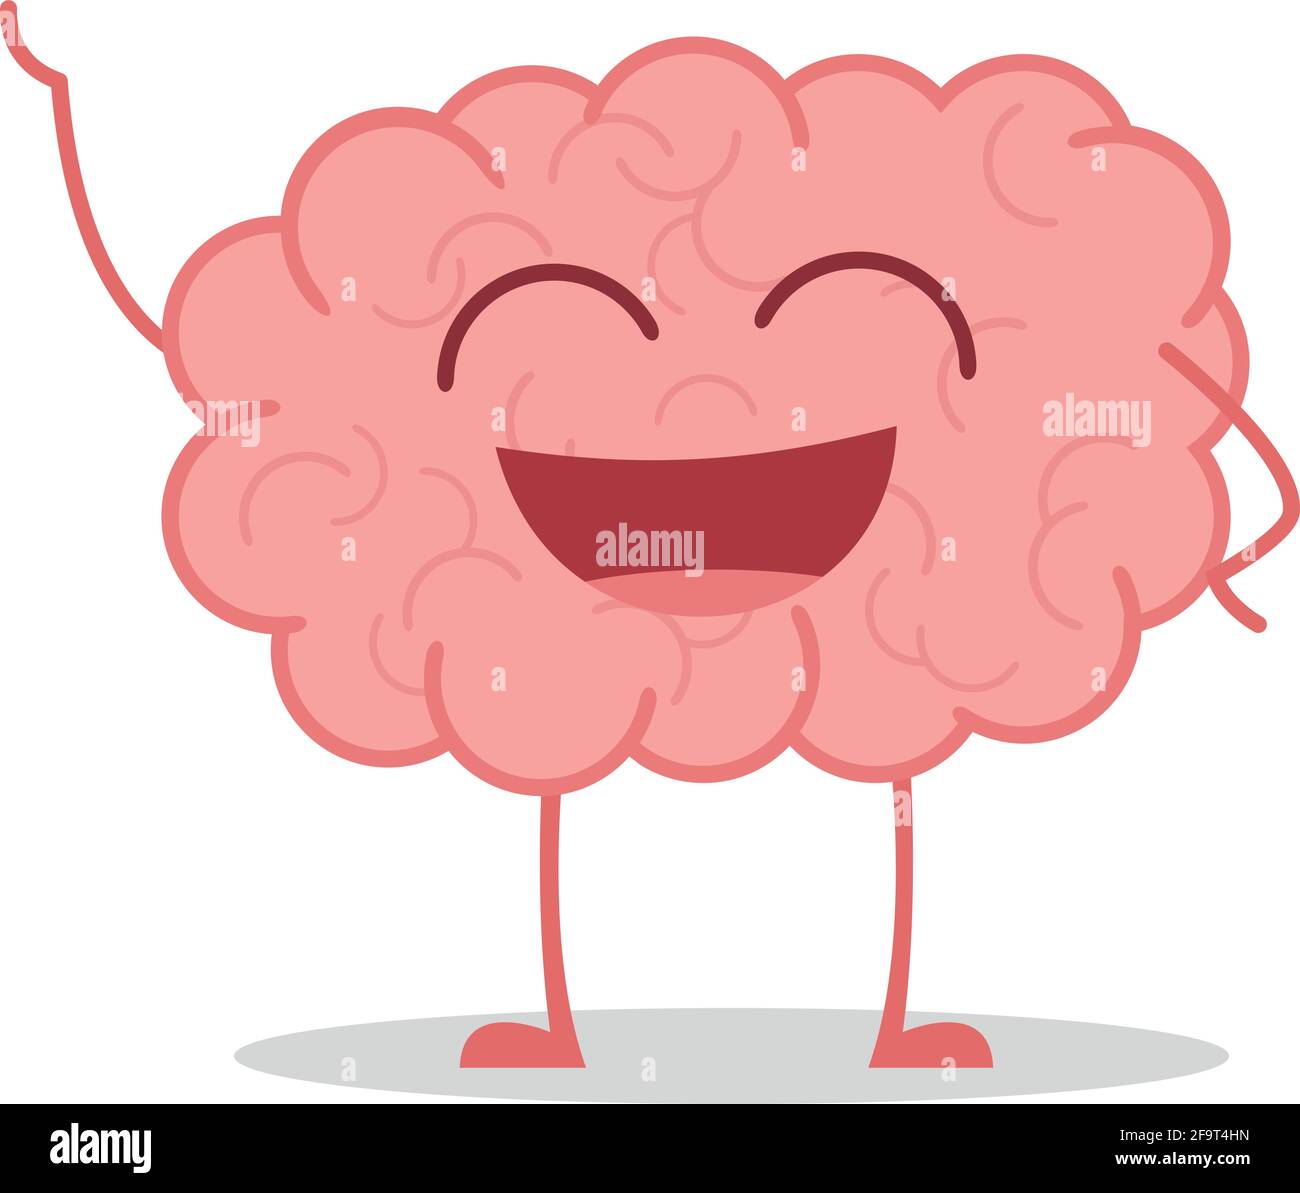 Illustrazione vettoriale di un cervello sano e divertente in stile cartoon. Illustrazione Vettoriale